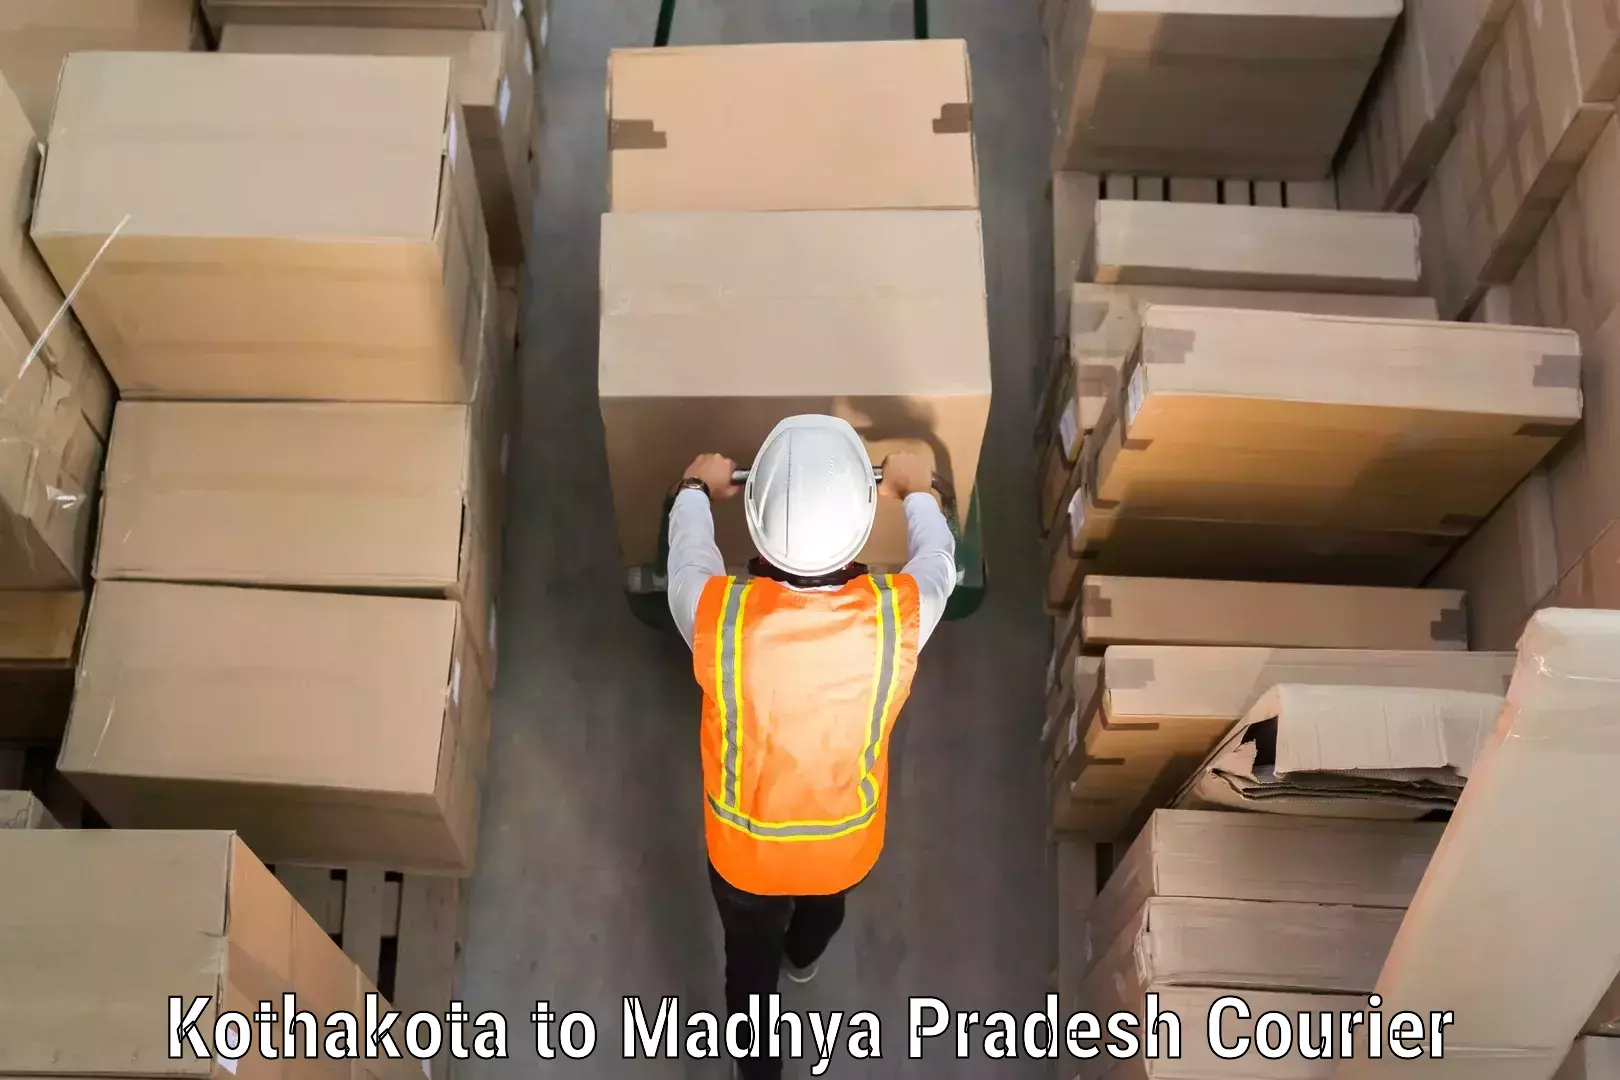 Baggage shipping service Kothakota to Indore